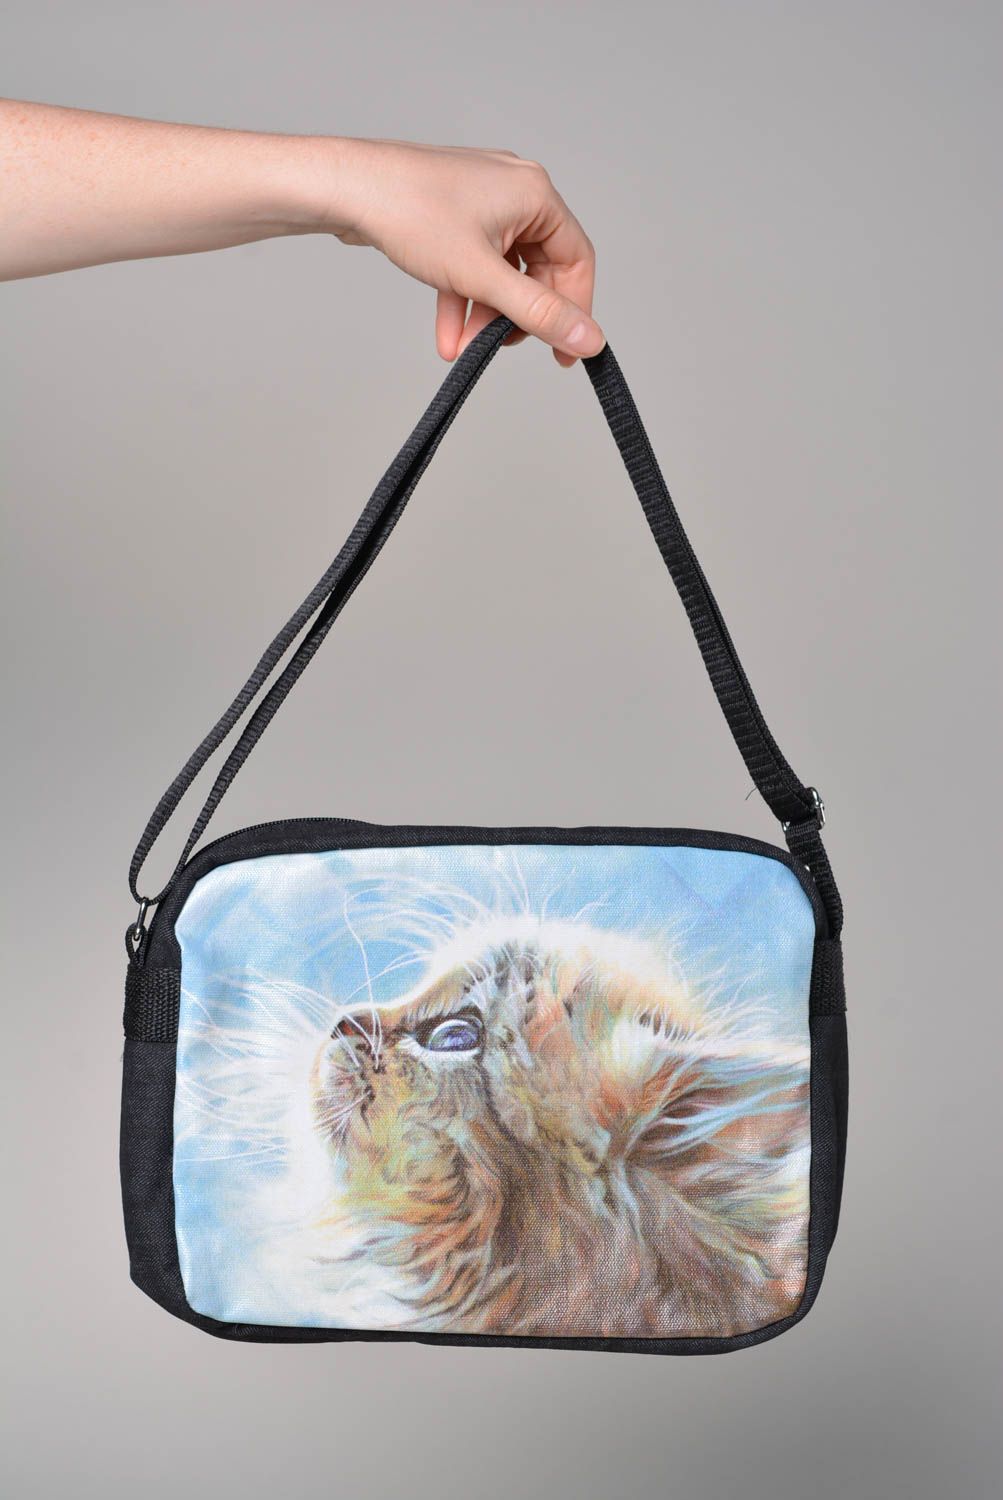 Unusual handmade textile bag denim shoulder bag fashion trends gifts for her photo 3